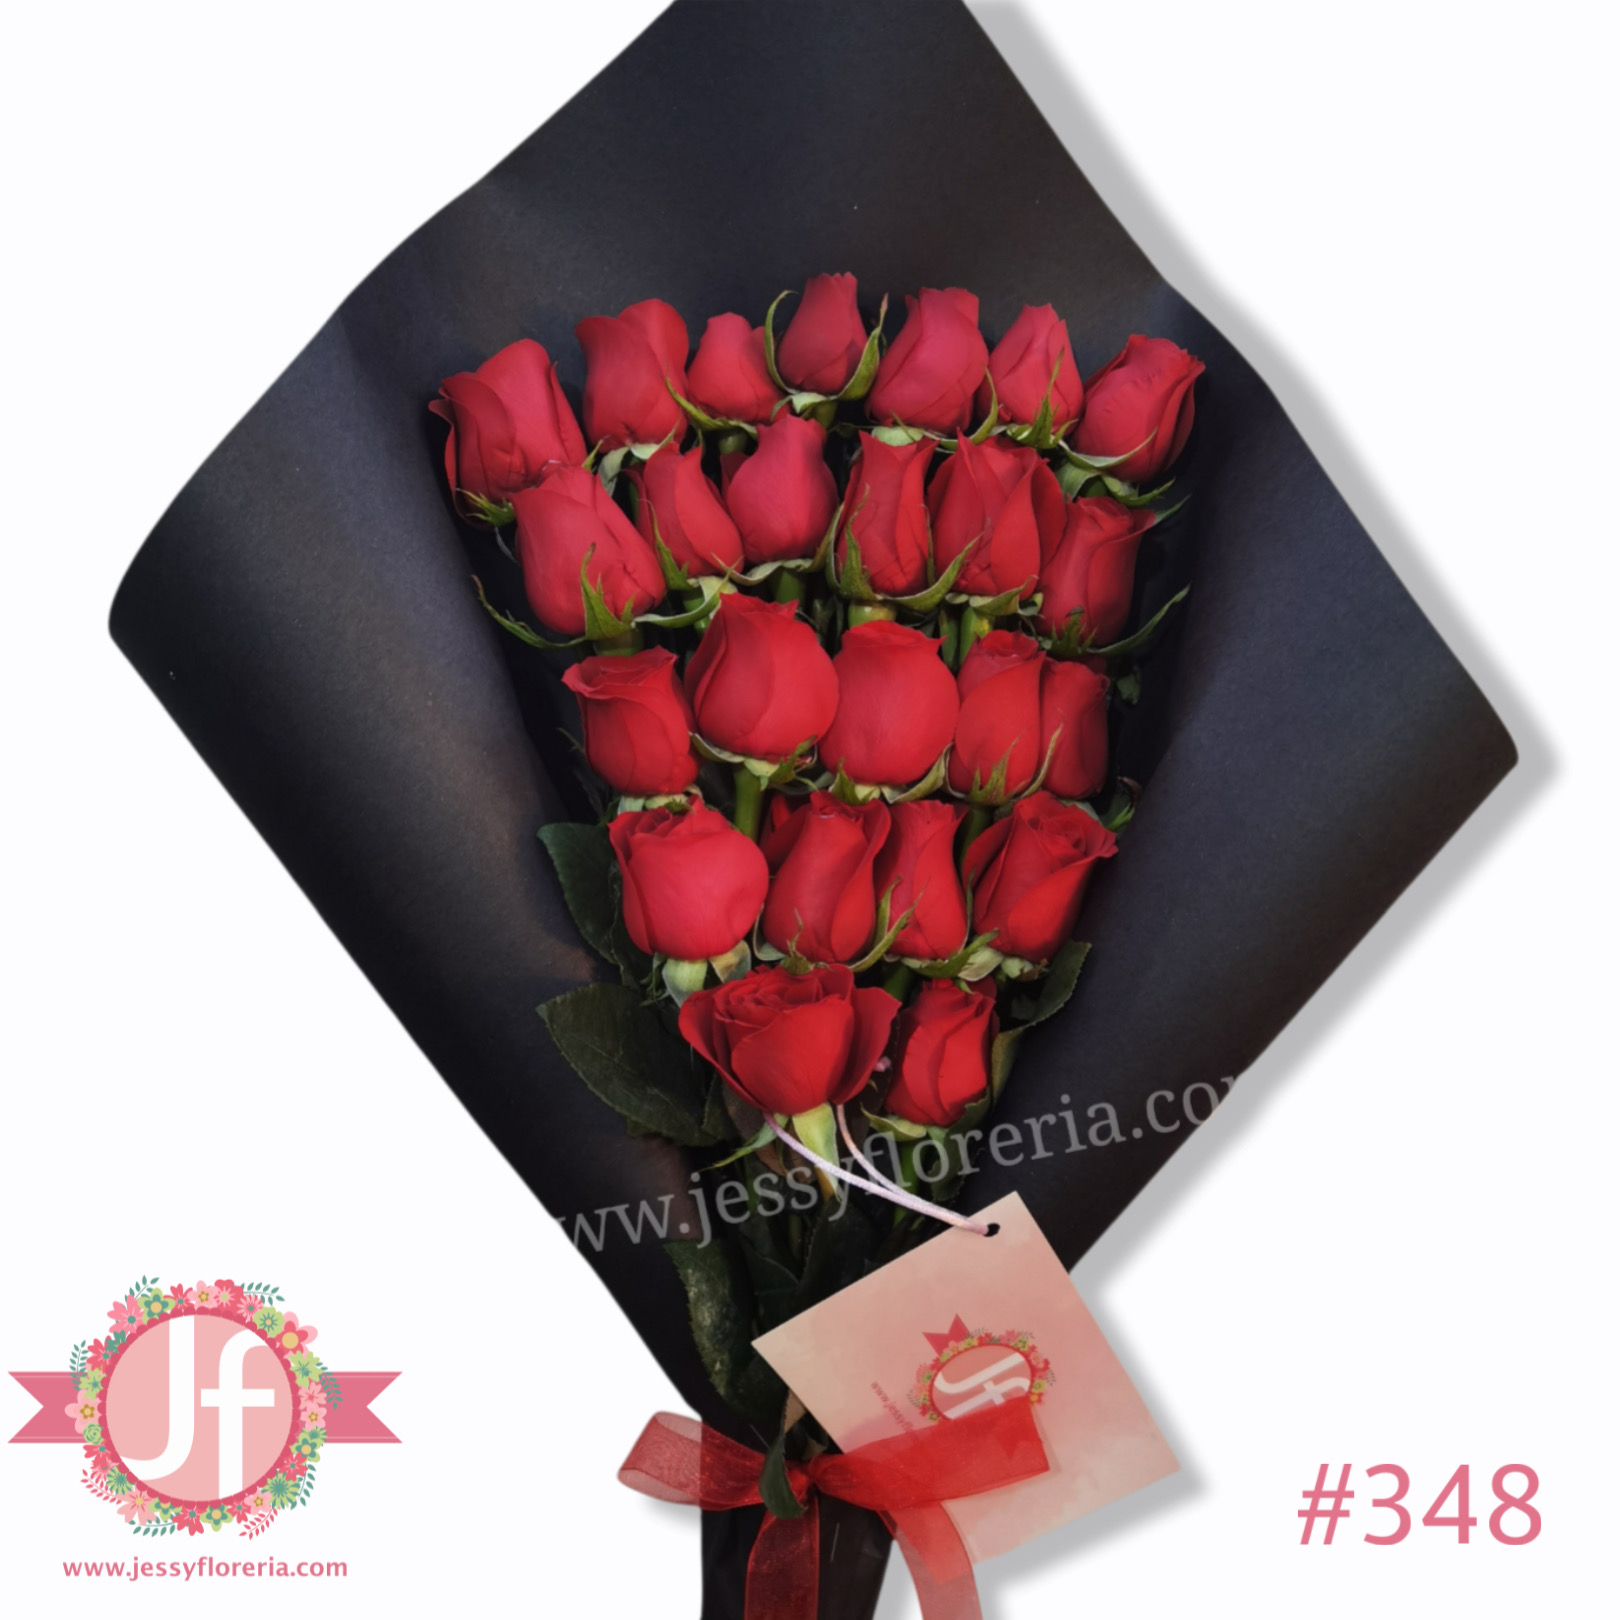 Ramo de 24 rosas rojas - Envío a domicilio mismo día 2 a 4 Hrs